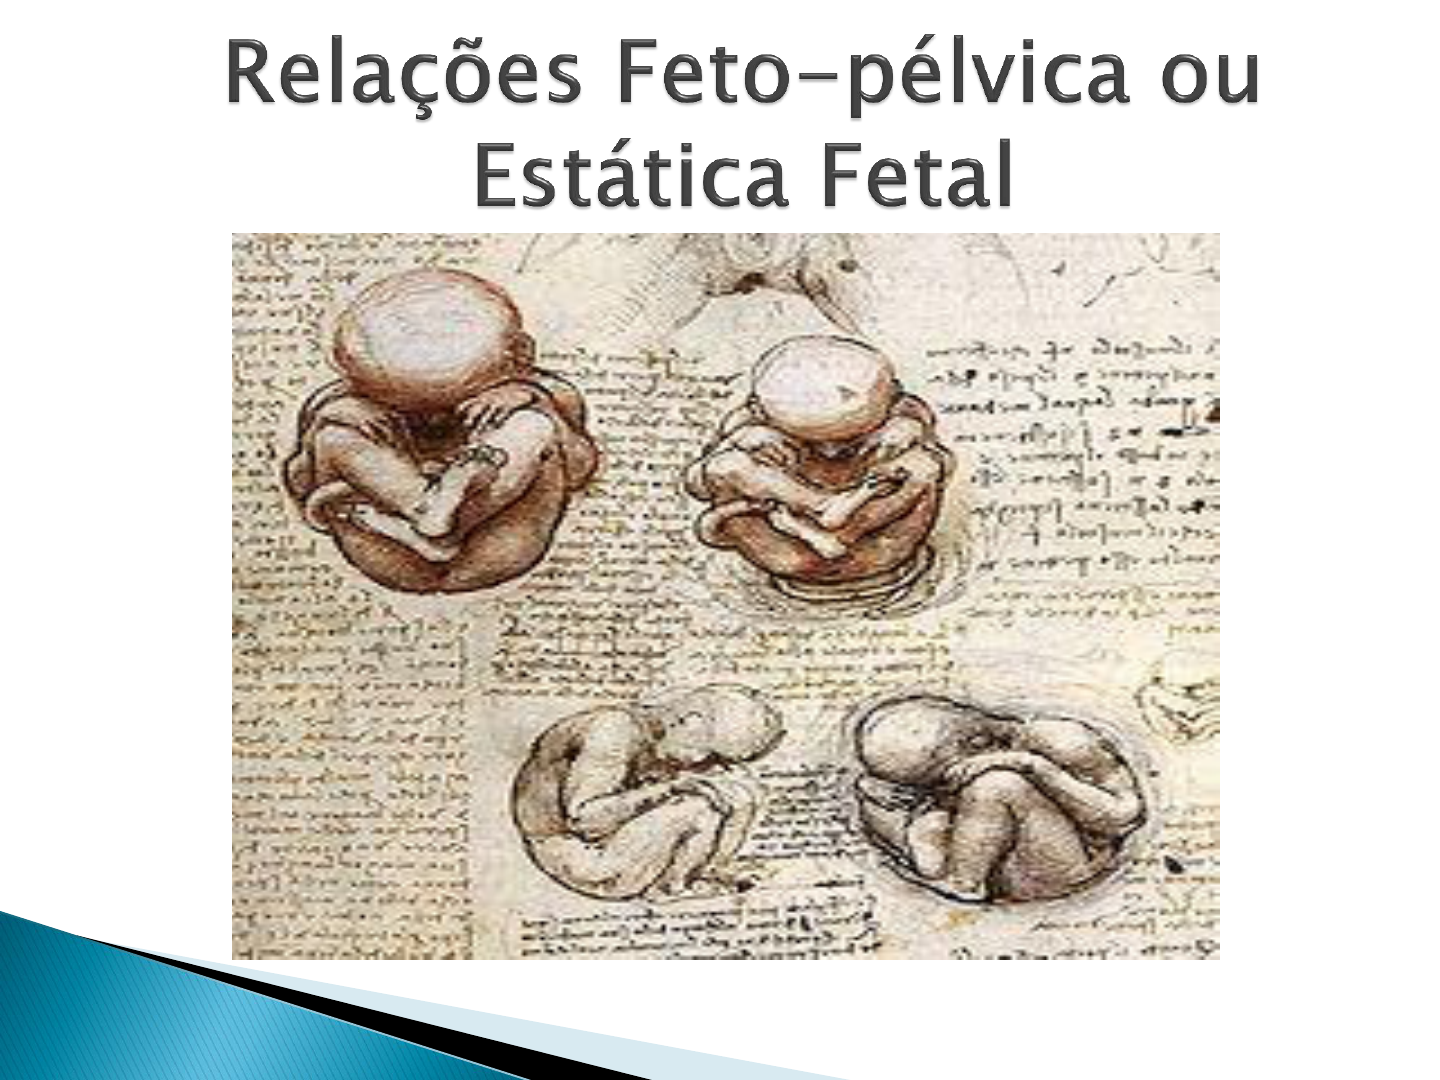 7 Relações feto pélvica ou estática fetal - Enfermagem